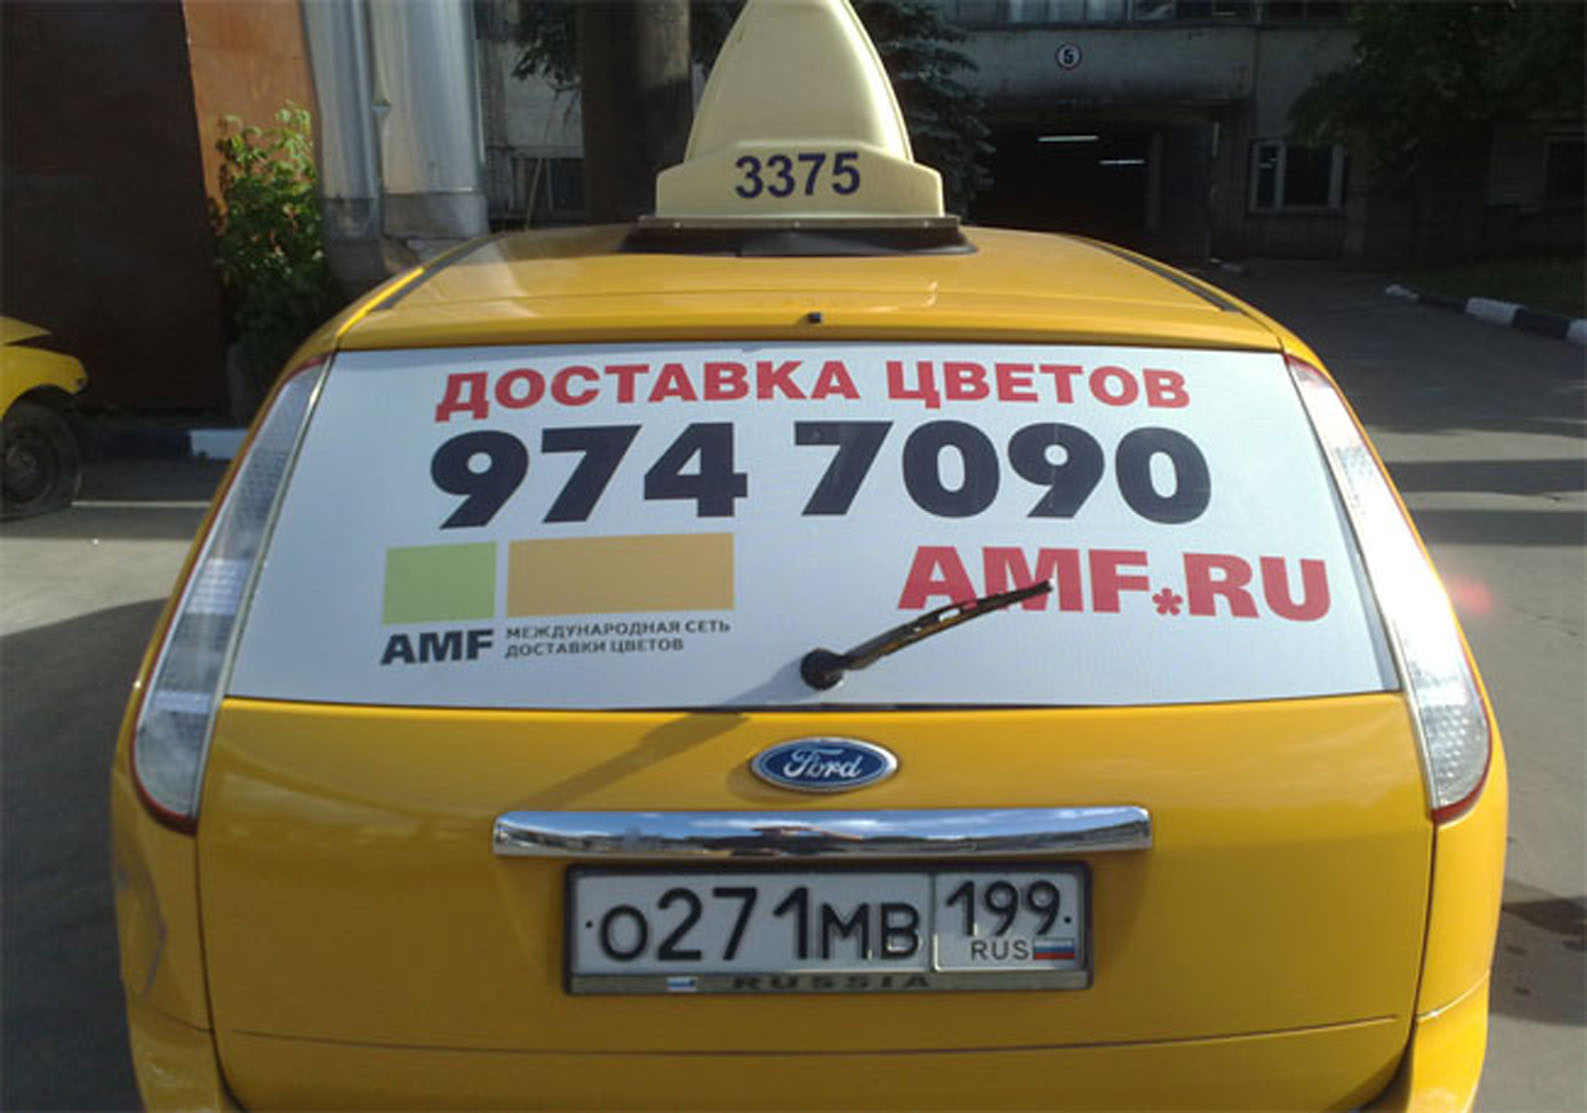 Такси выходным. Реклама такси. Реклама такси на машине. Рекламные наклейки на авто. Реклама на заднем стекле такси.